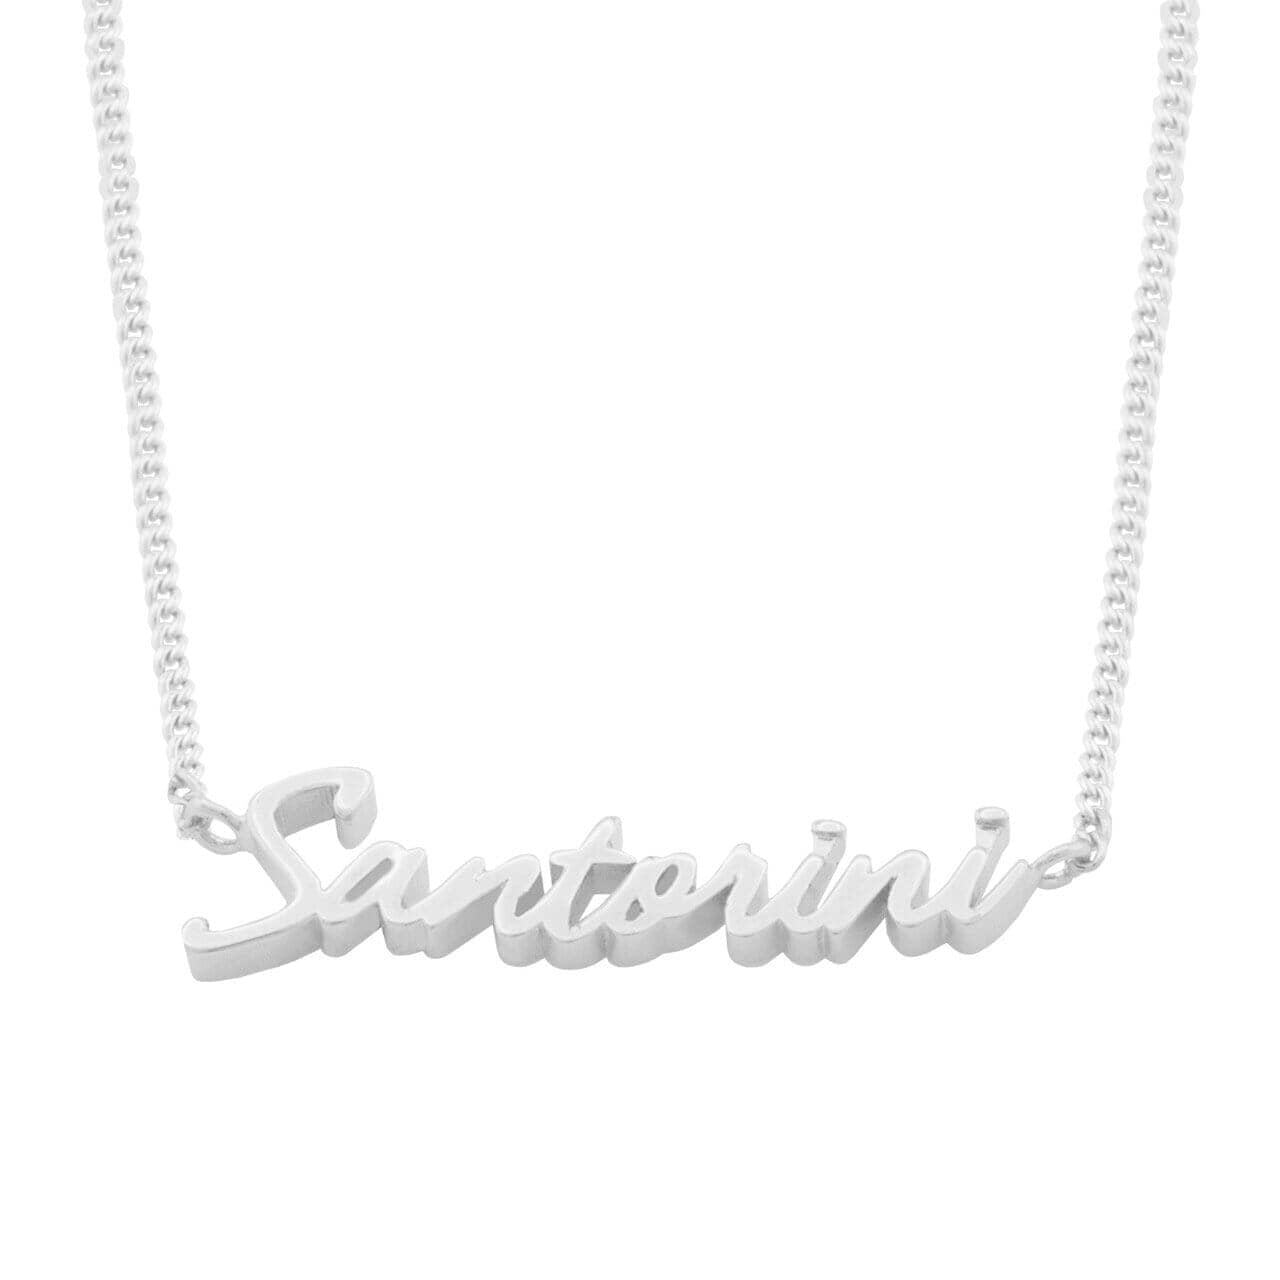 Santorini Signature Necklace - Capsul